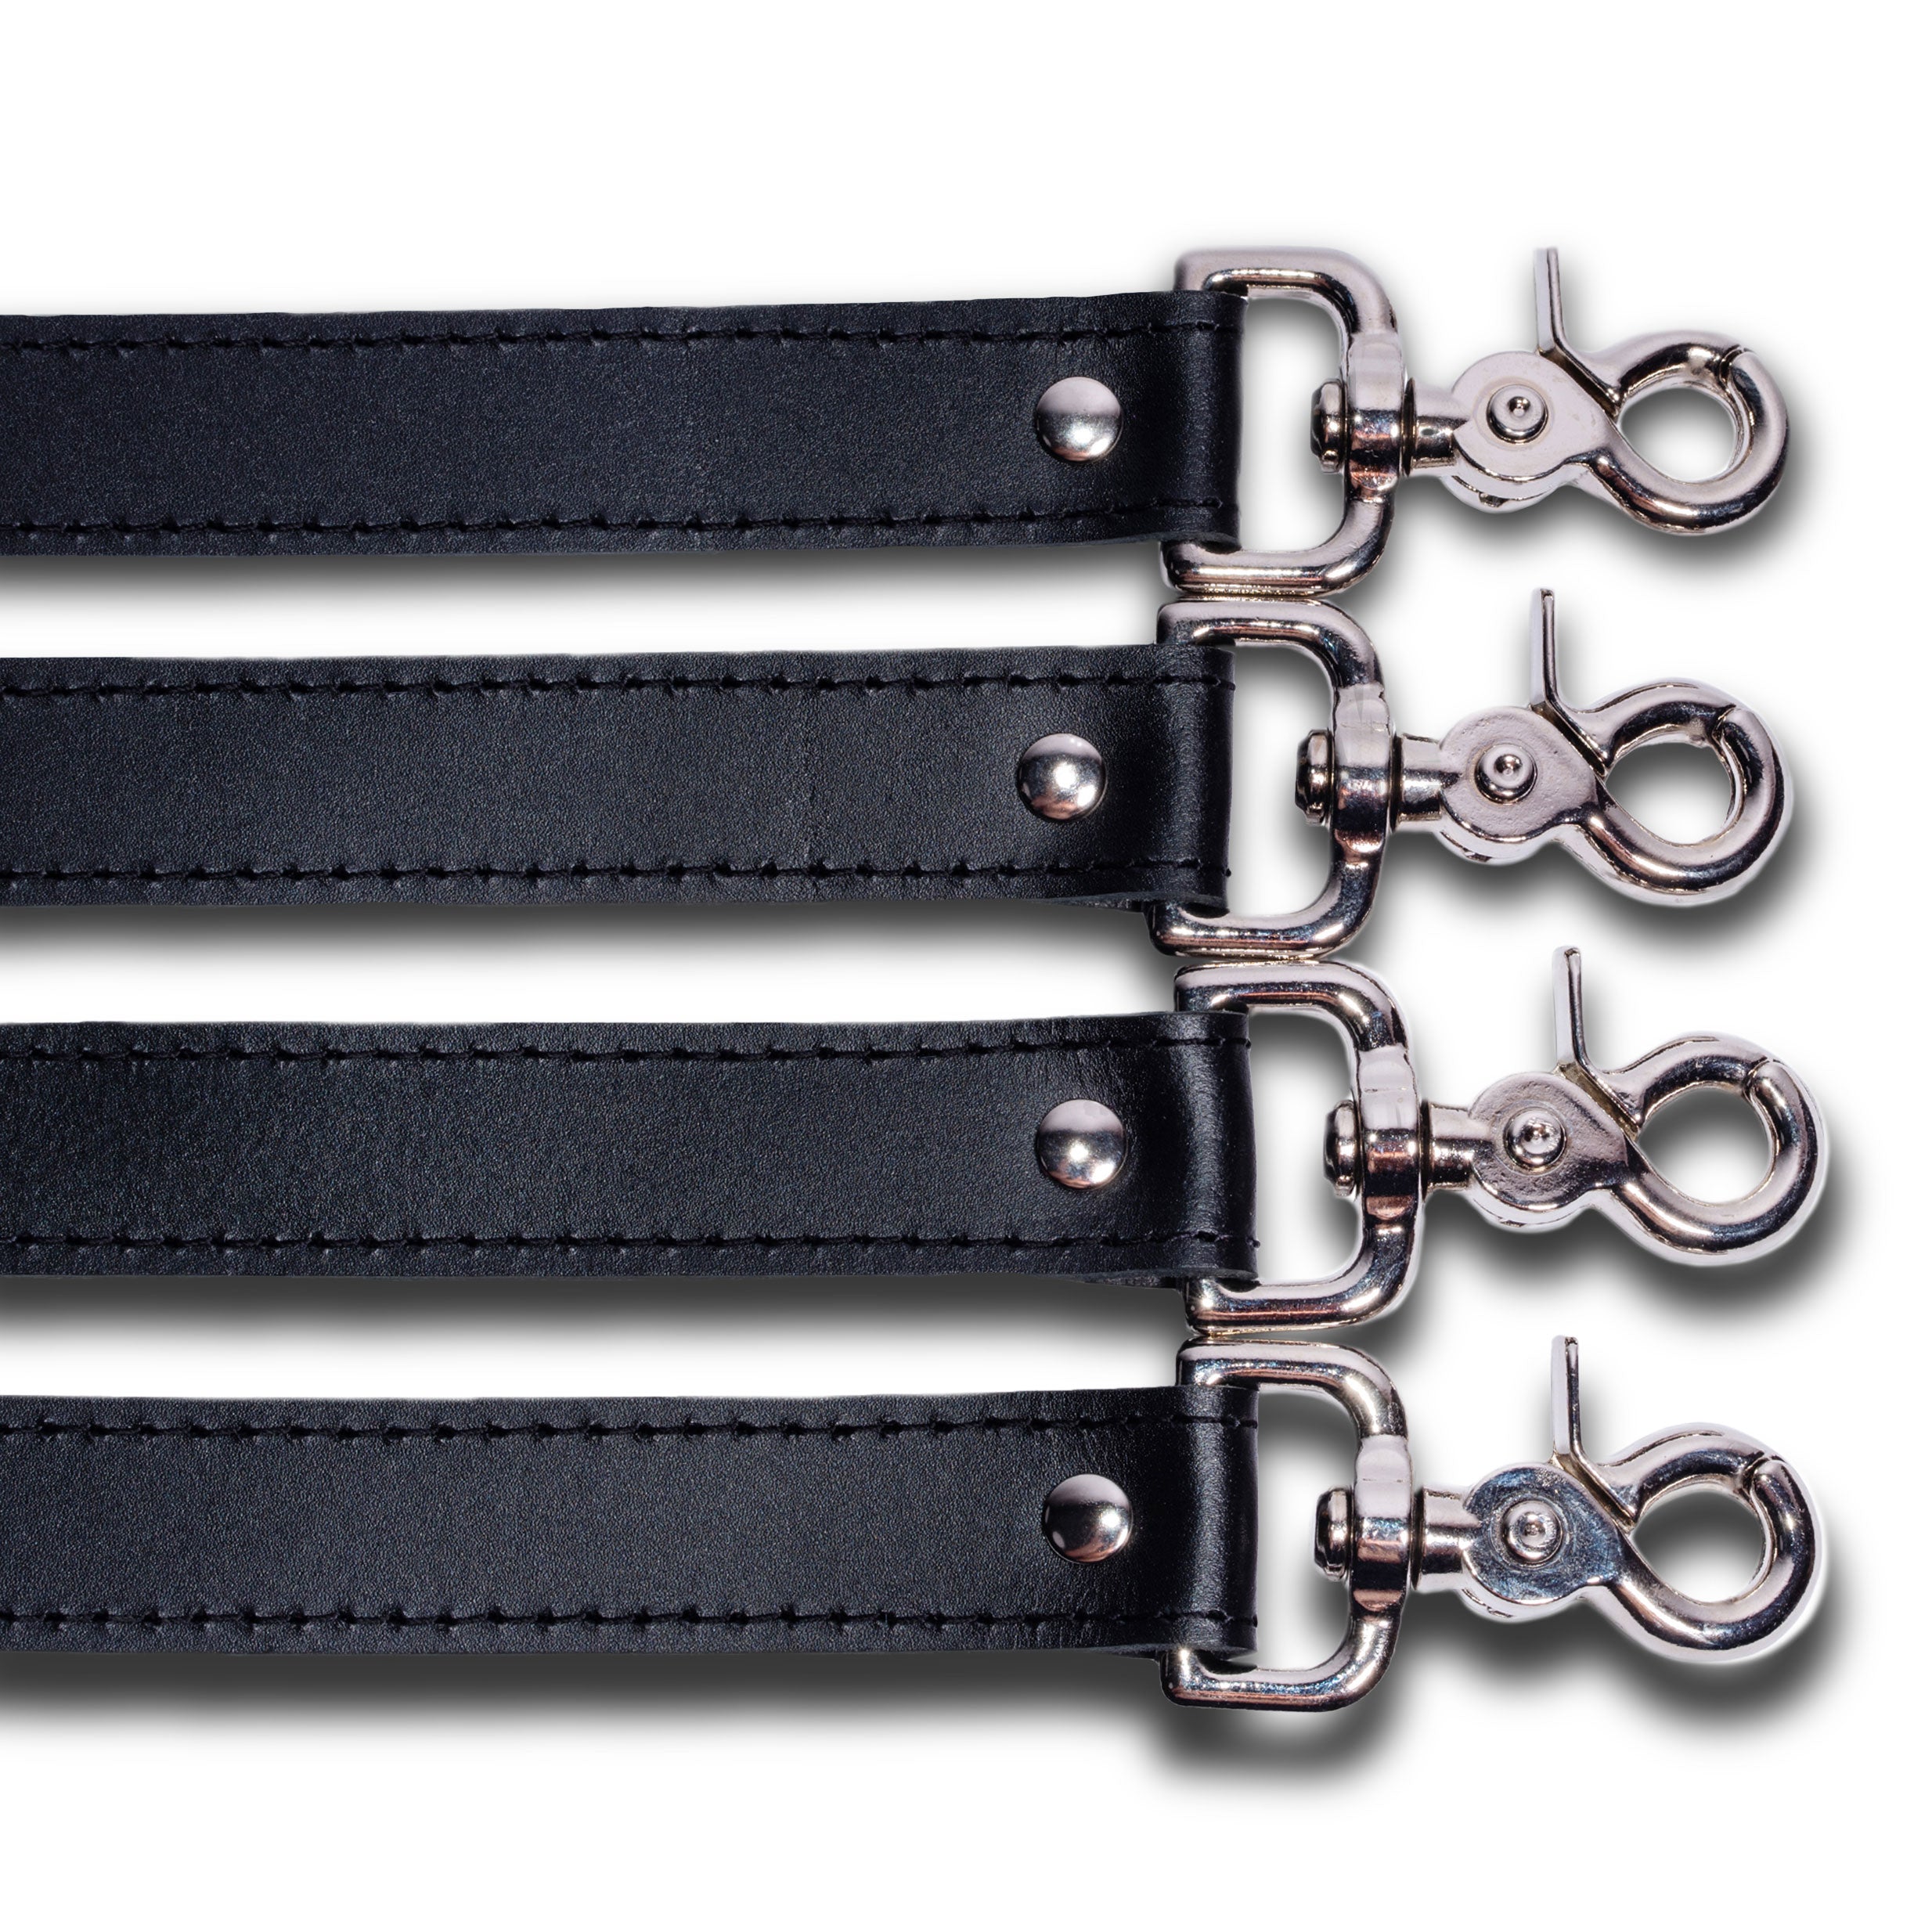 https://oddoleather.com/cdn/shop/products/black-on-black-detail-mandrake-leather-bed-restraint-straps-2468x2468.jpg?v=1622490690